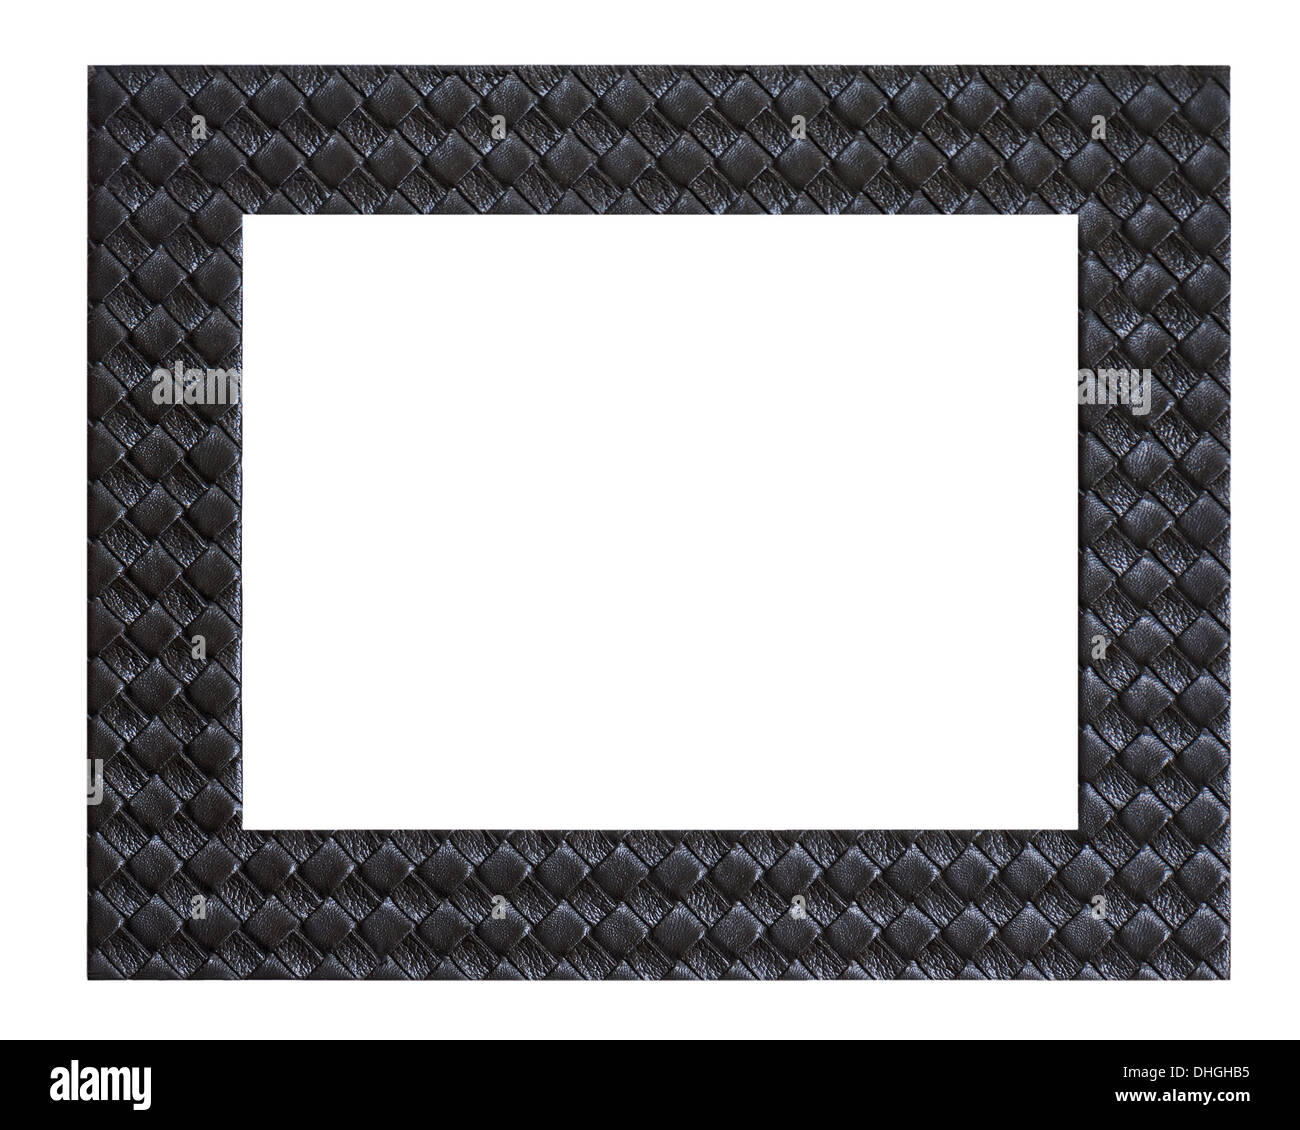 Marco cuadrado negro decorativo. — Ilustración de stock